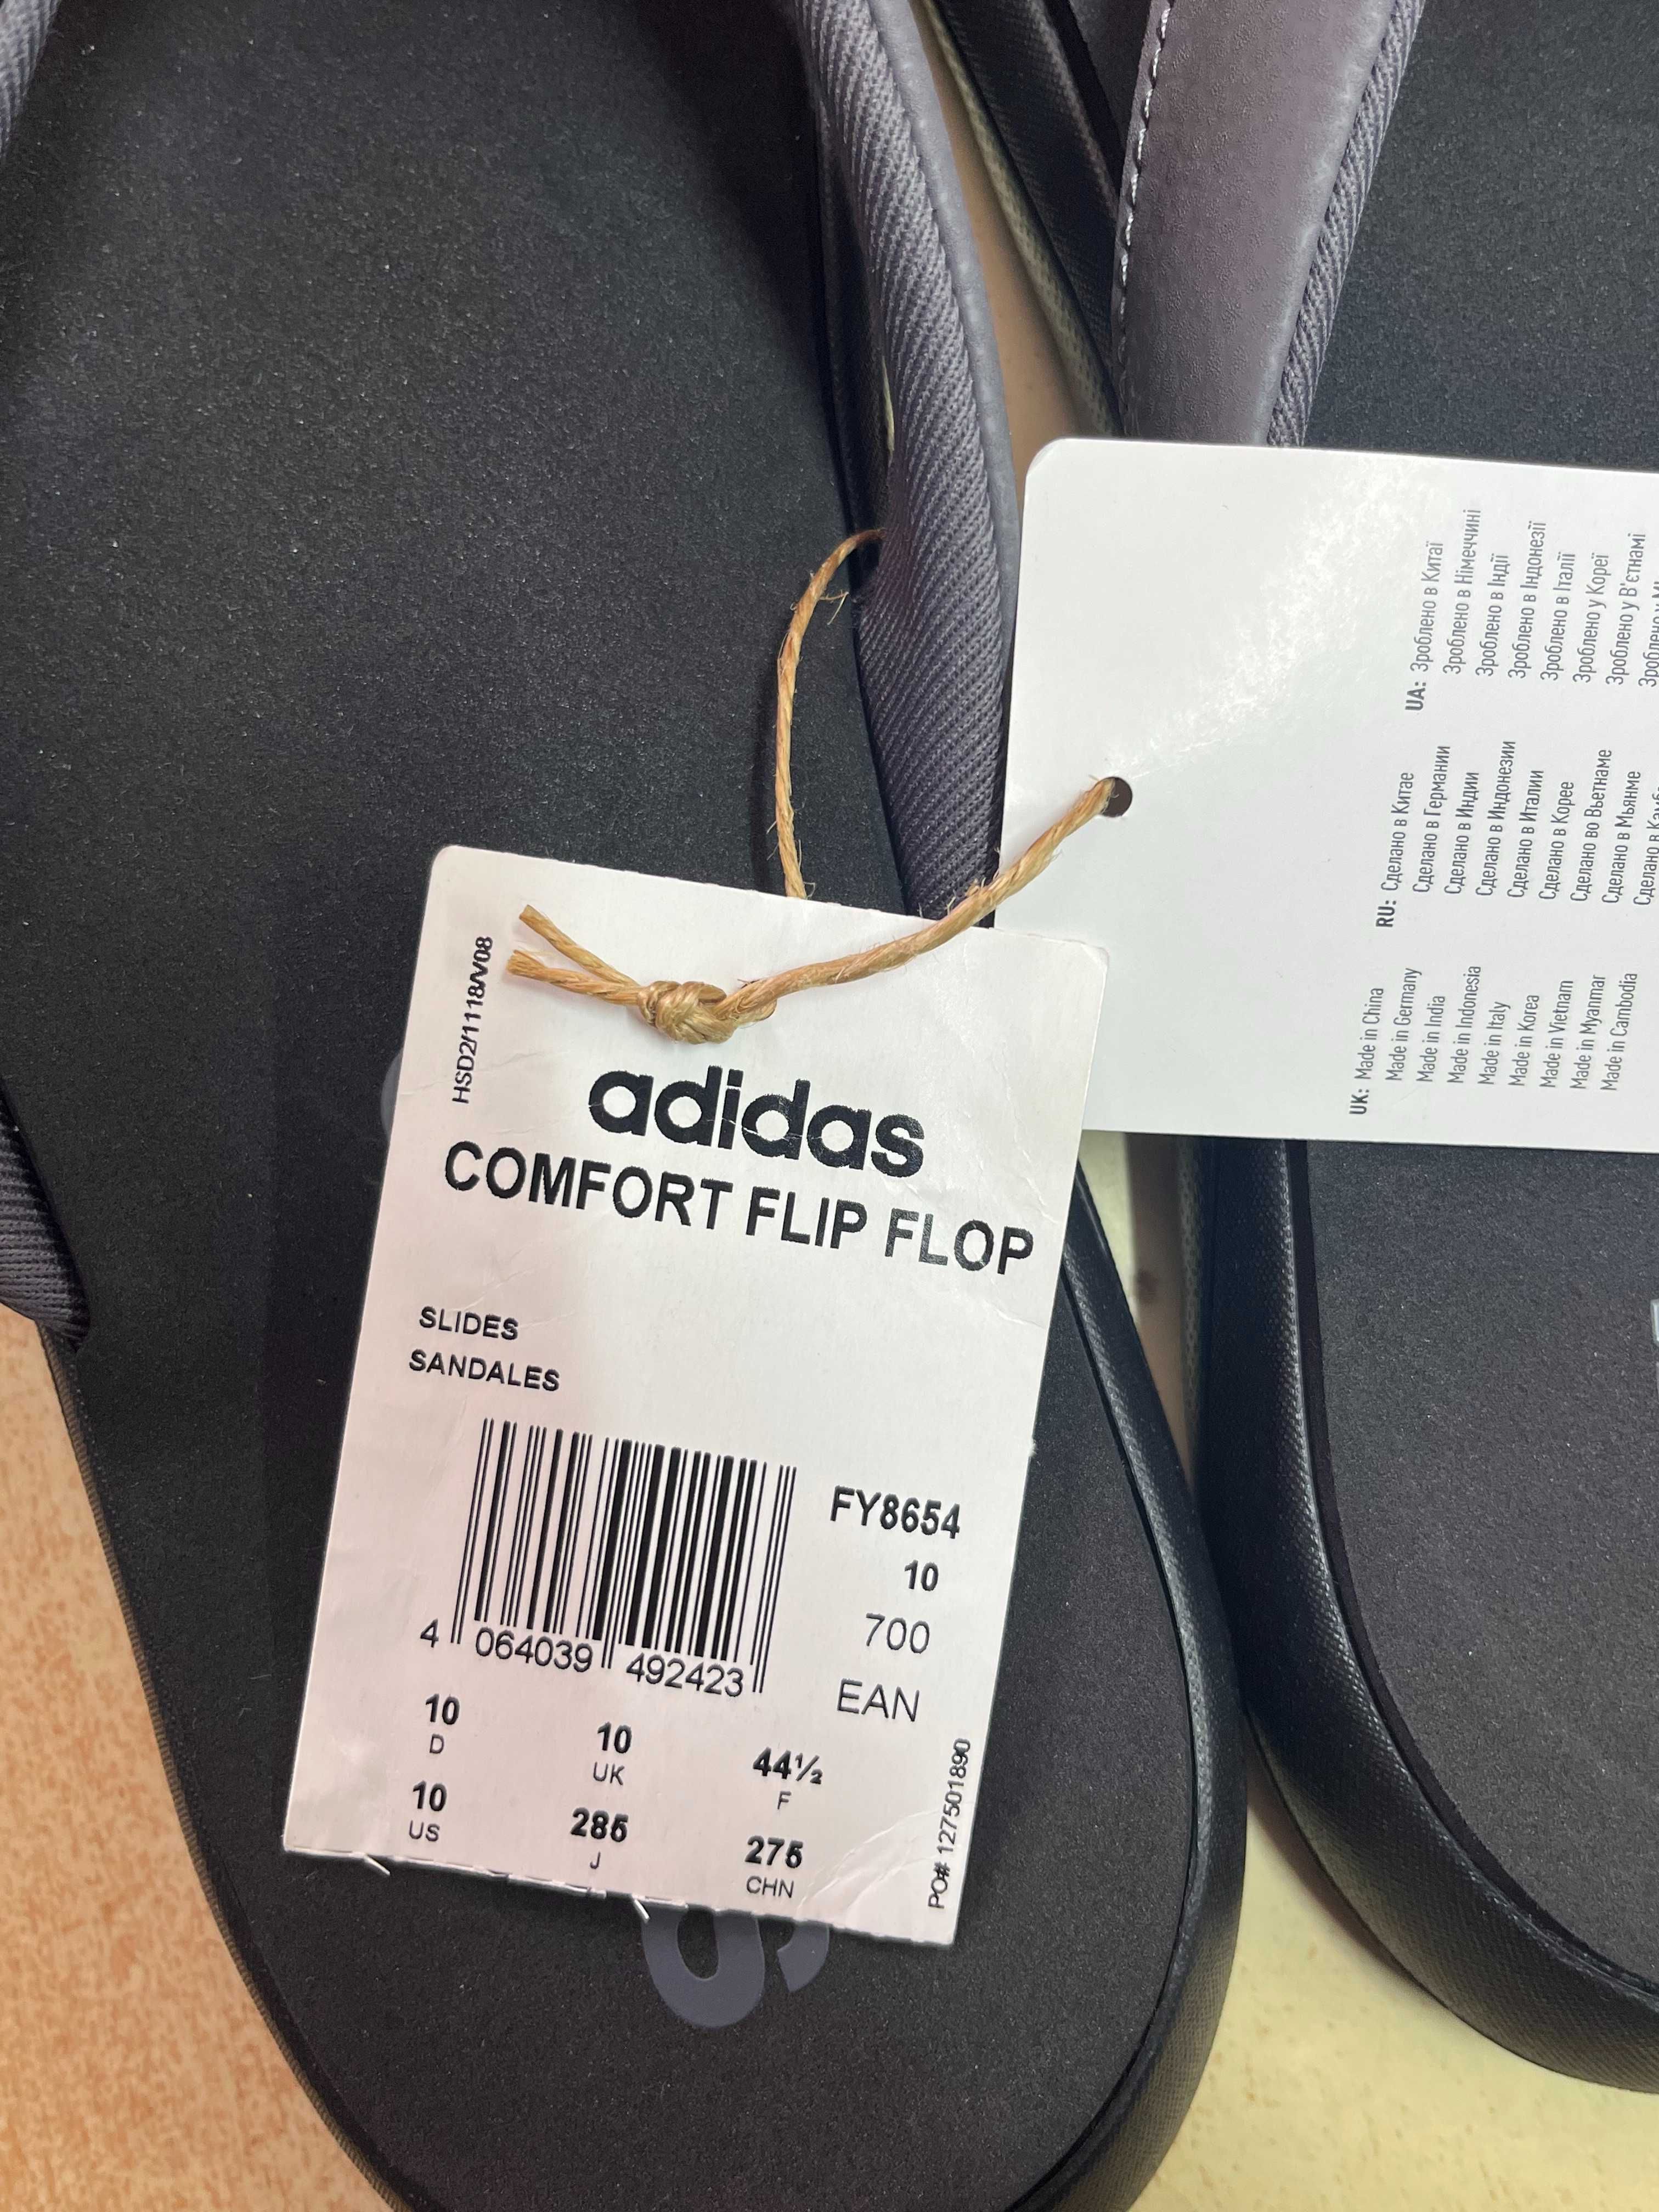 Вьетнамки Adidas Comfort Flip Flop (FY8654) оригинал